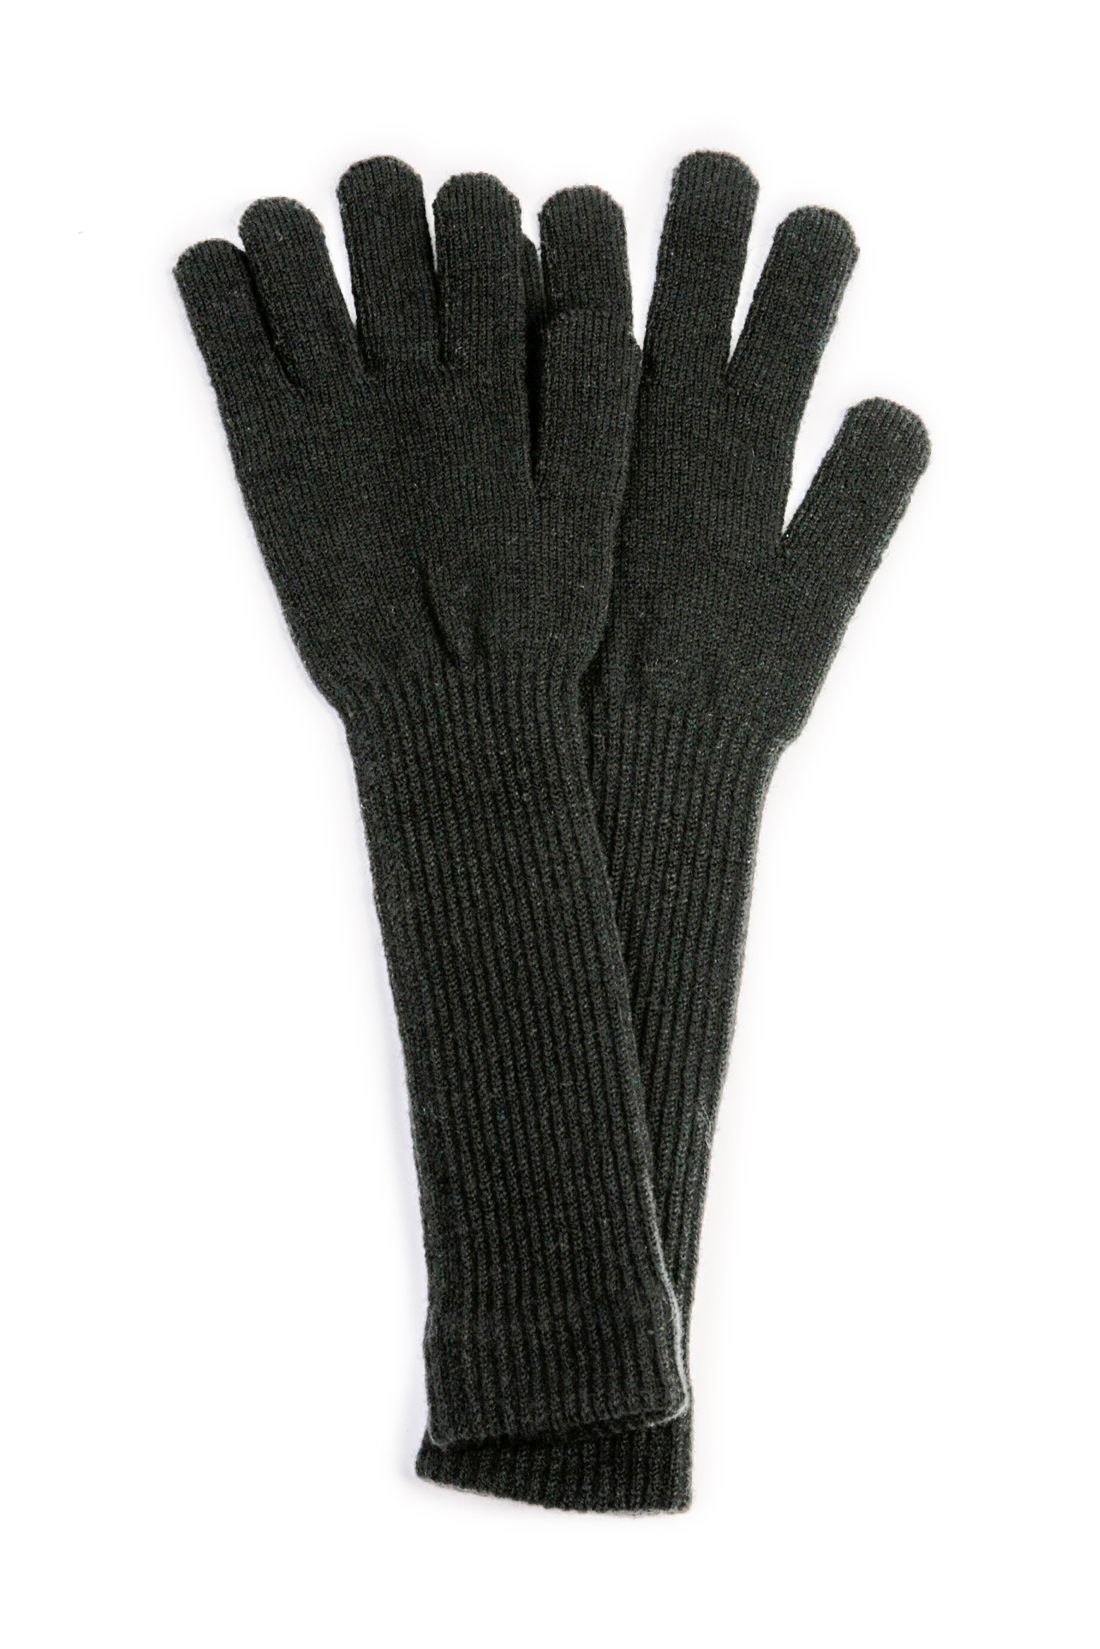 Высокие перчатки (арт. baon B368513), размер Без/раз, цвет черный